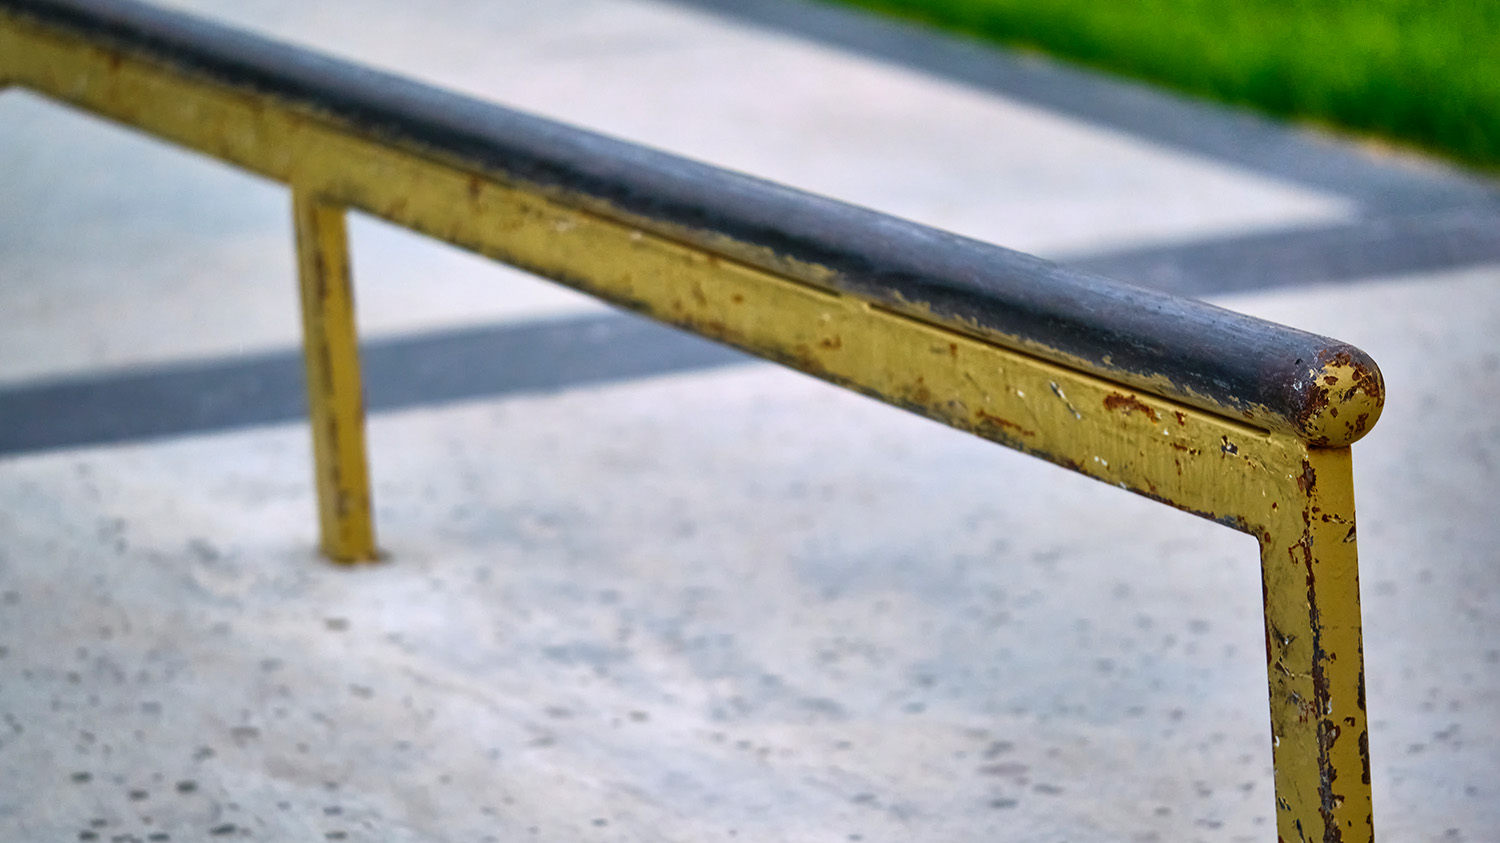 Worn metal skate park rail.